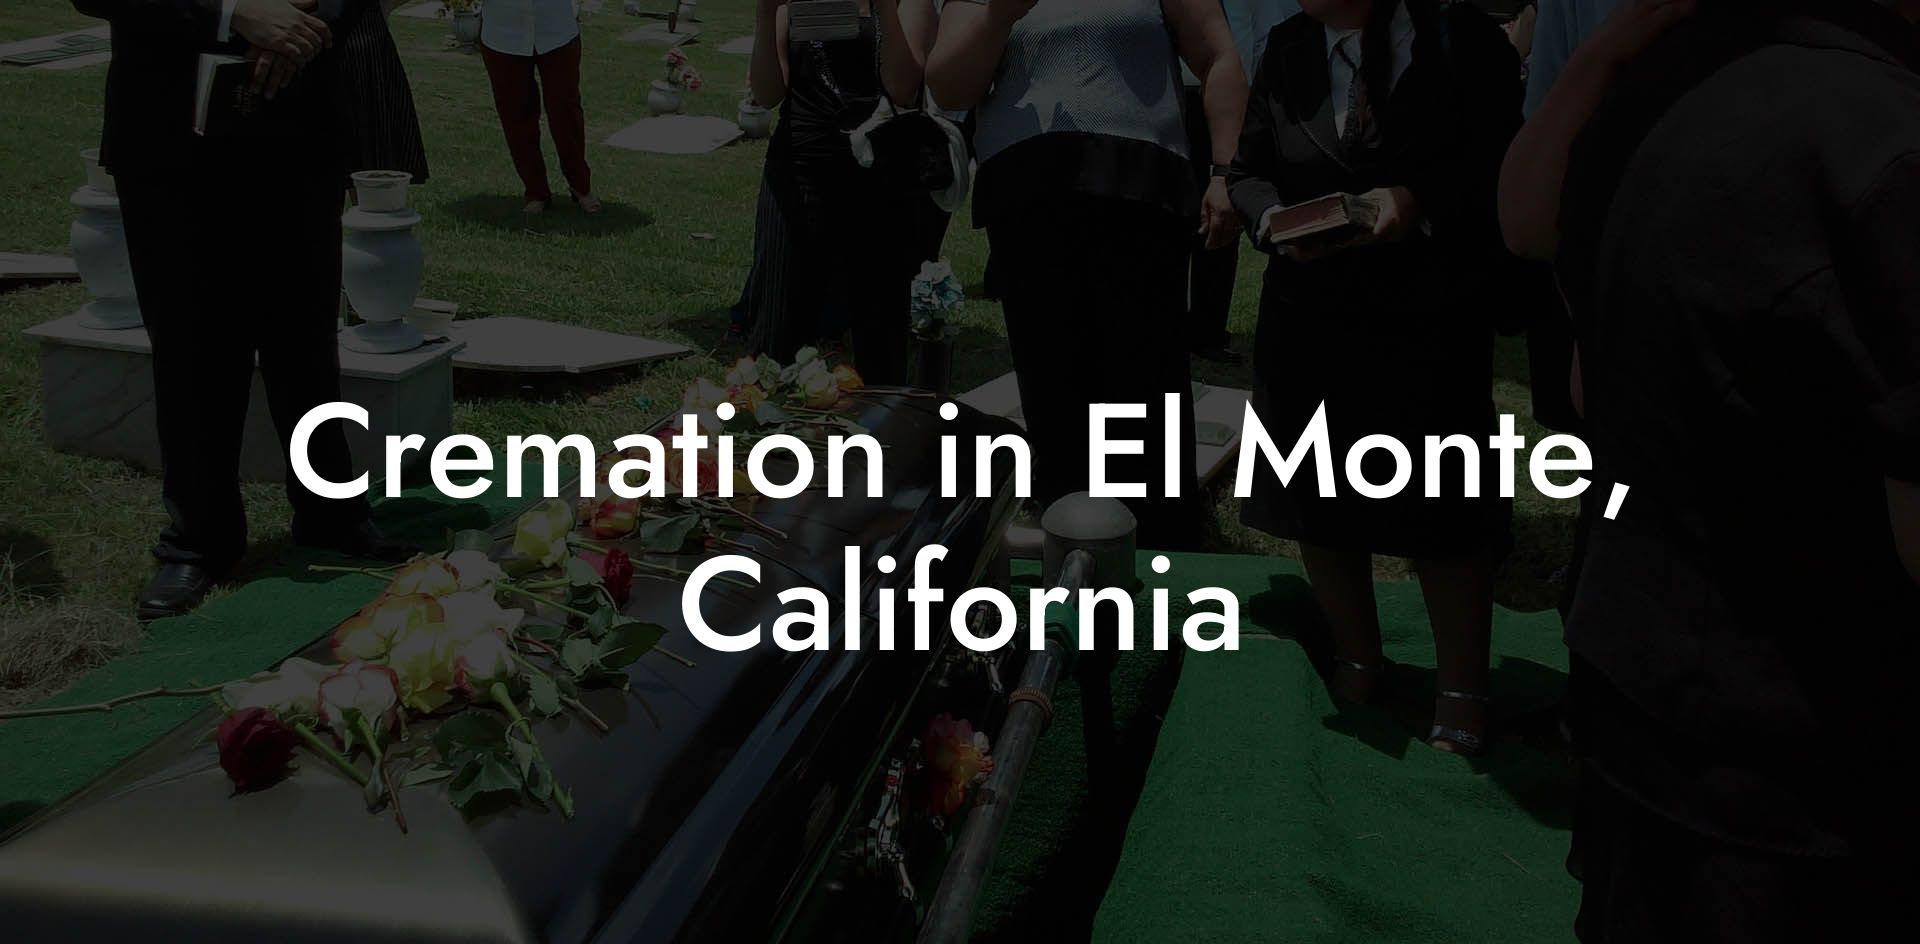 Cremation in El Monte, California